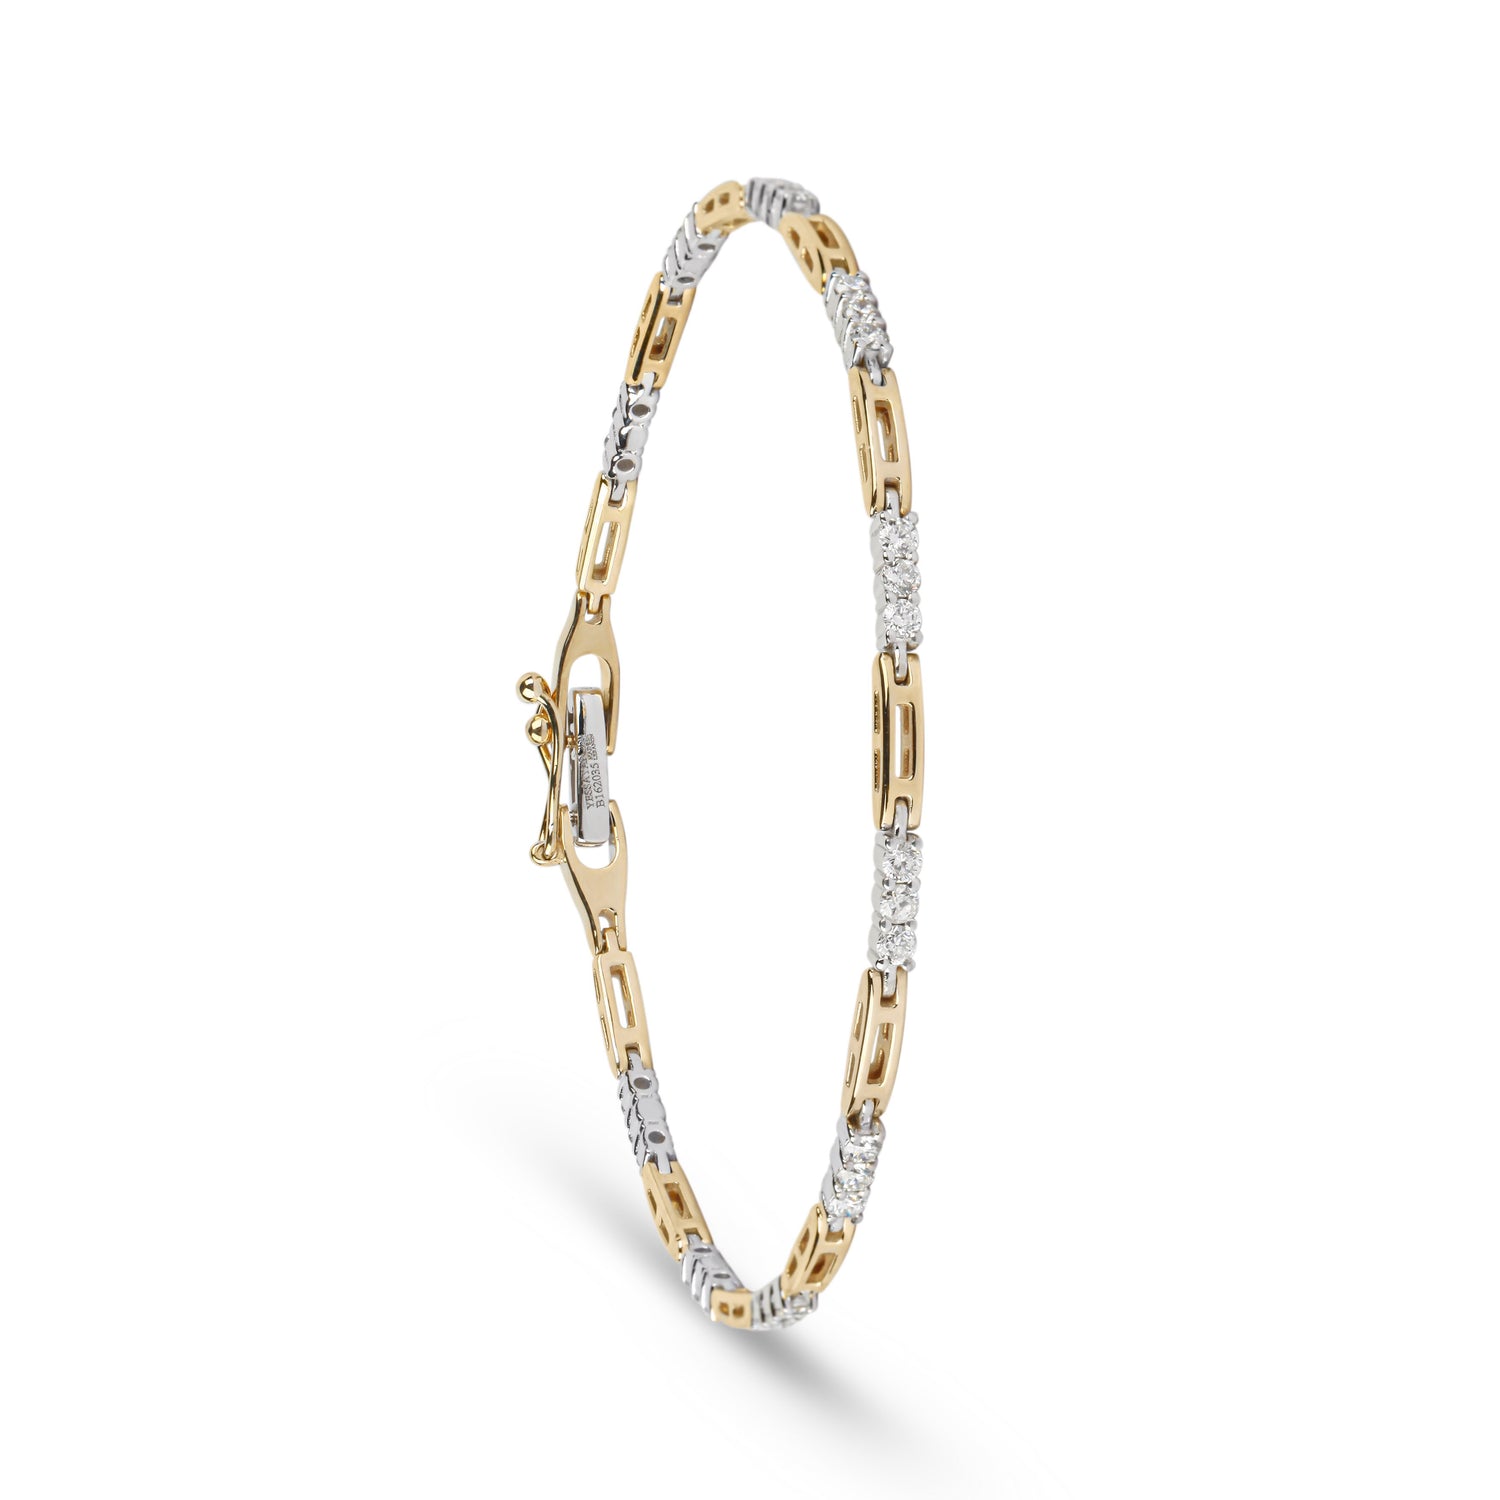 Gold Link & Diamond Tennis Bracelet | Jewelry online in Kuwait